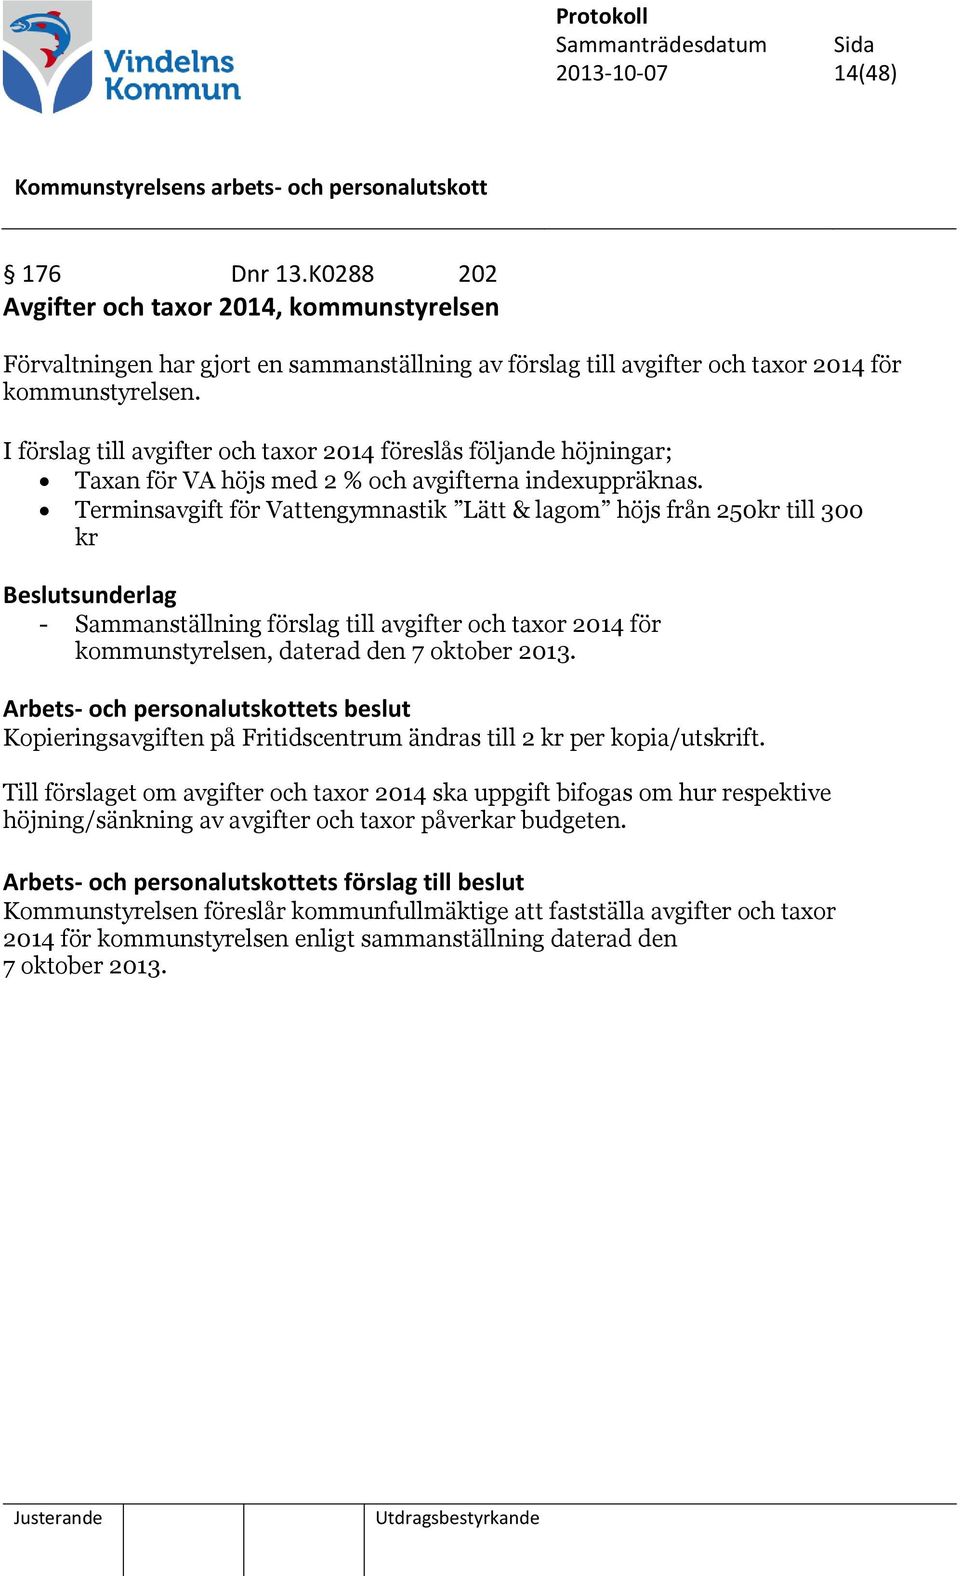 Terminsavgift för Vattengymnastik Lätt & lagom höjs från 250kr till 300 kr - Sammanställning förslag till avgifter och taxor 2014 för kommunstyrelsen, daterad den 7 oktober 2013.